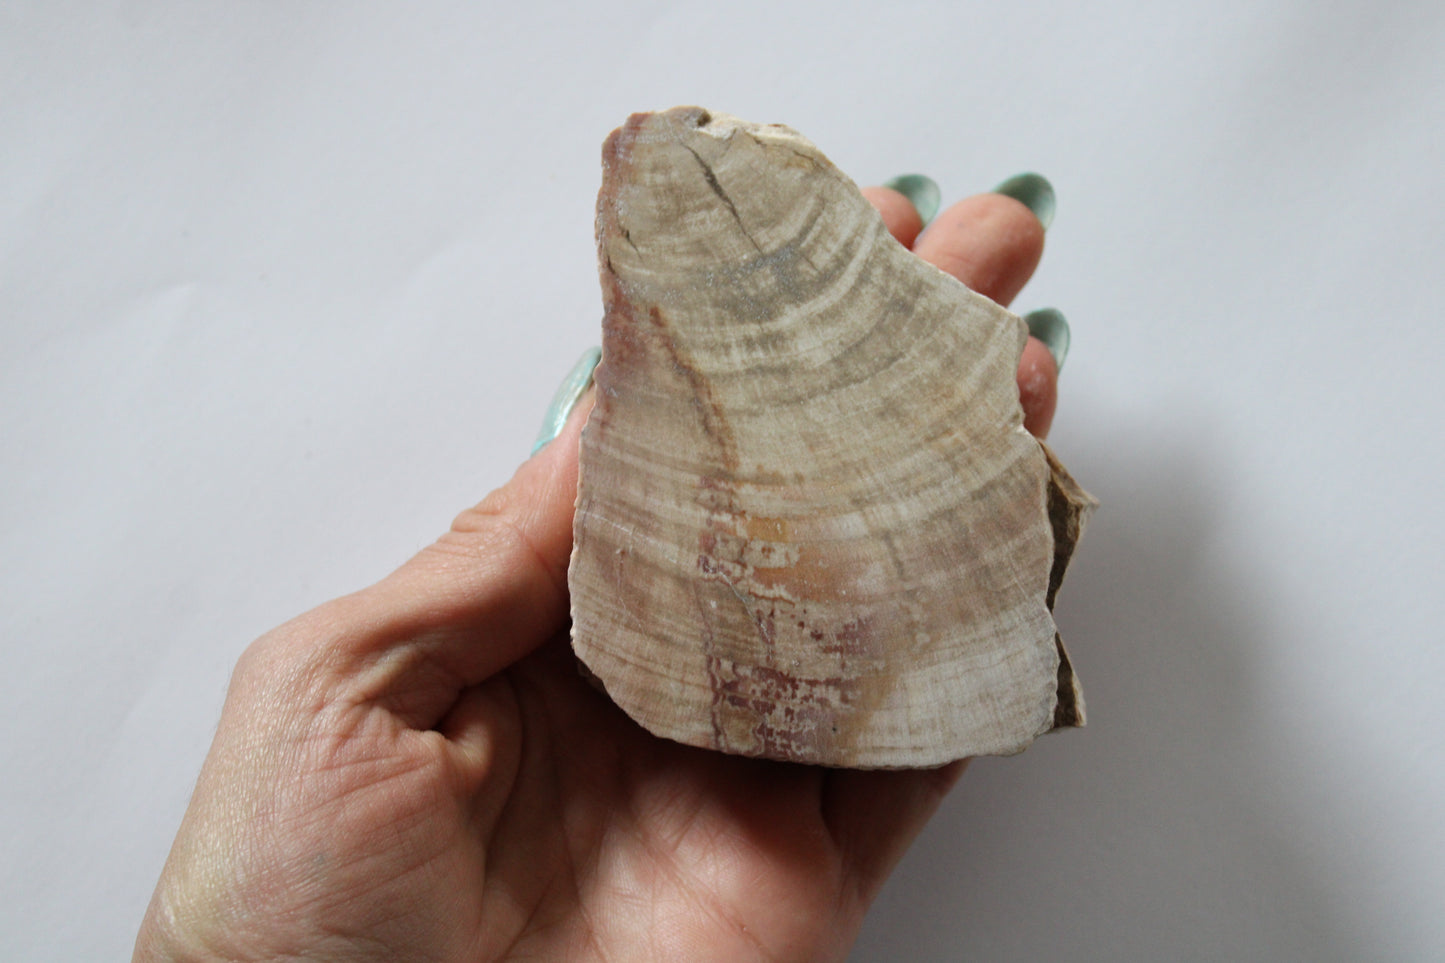 1 morceau de bois fossile AU CHOIX - format colis